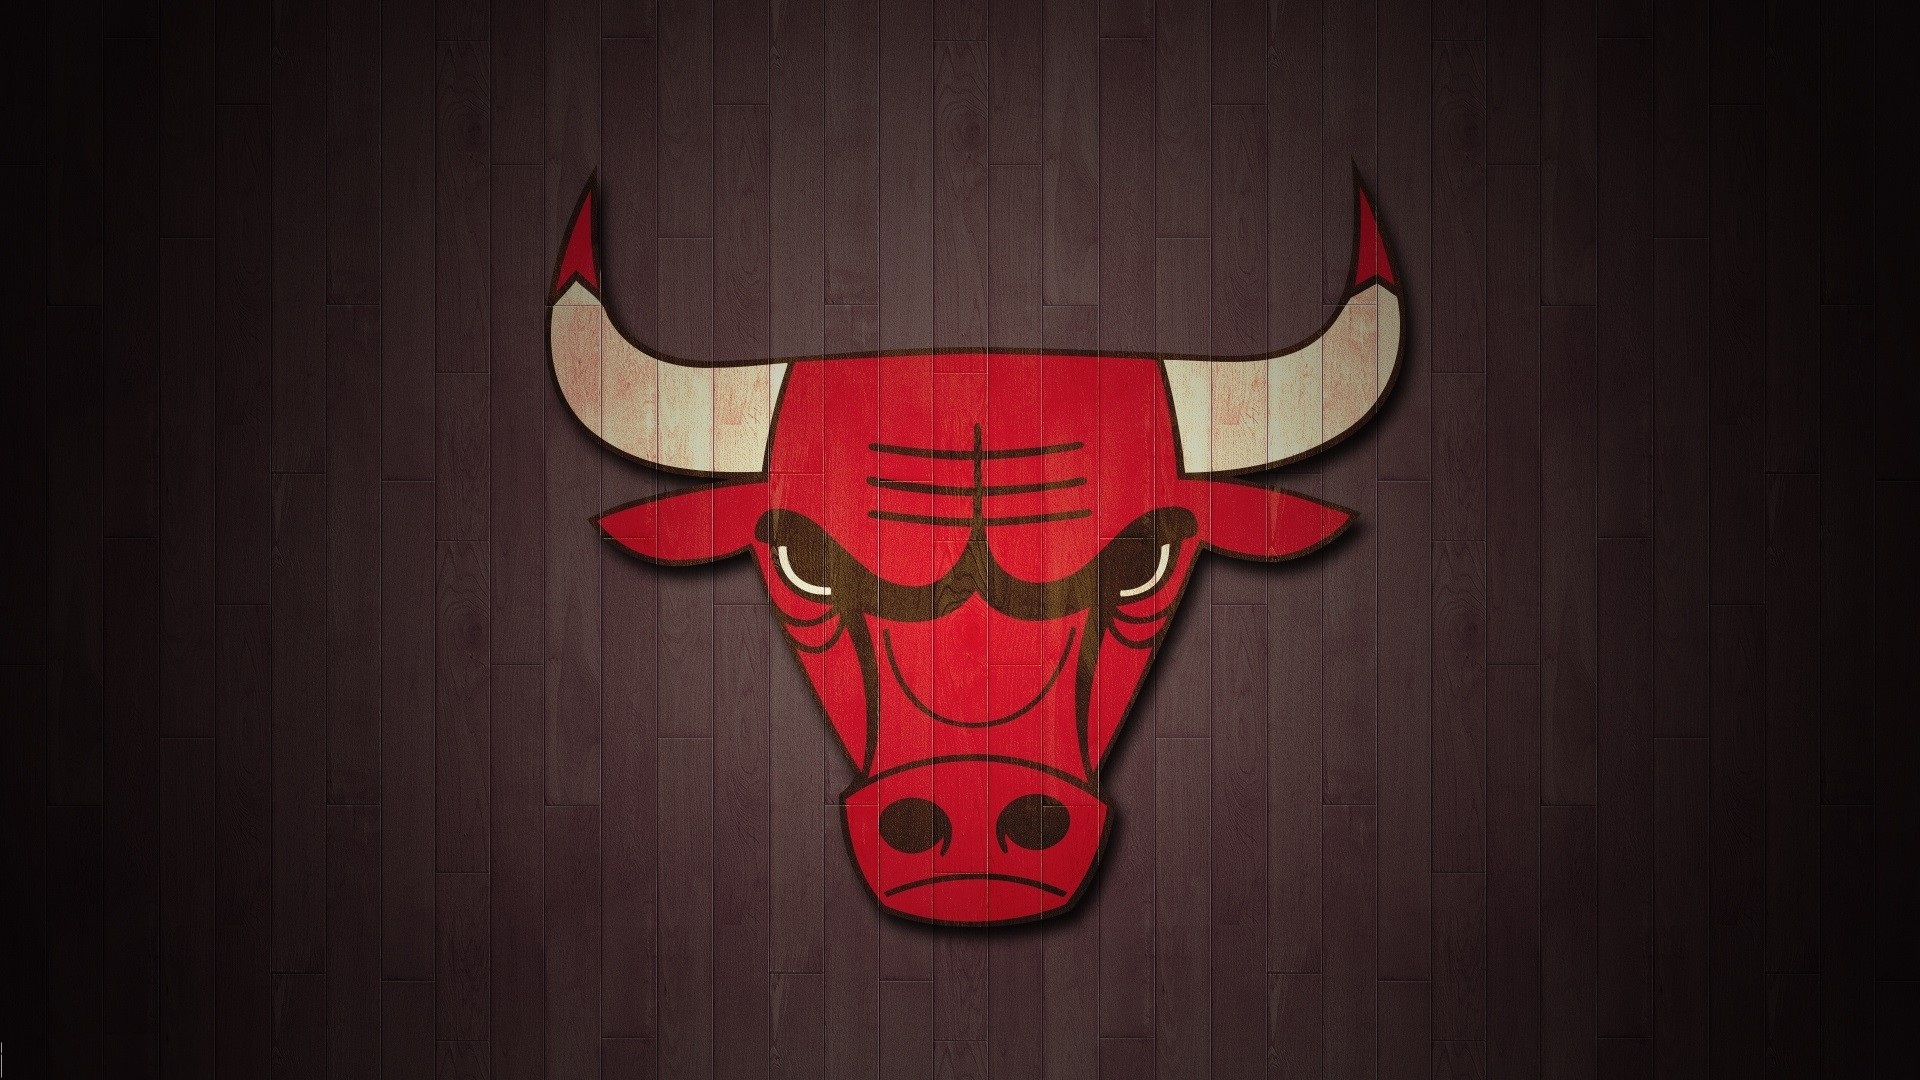 Chicago Bulls logo  Chicago bulls wallpaper, Chicago bulls basketball, Chicago  bulls logo